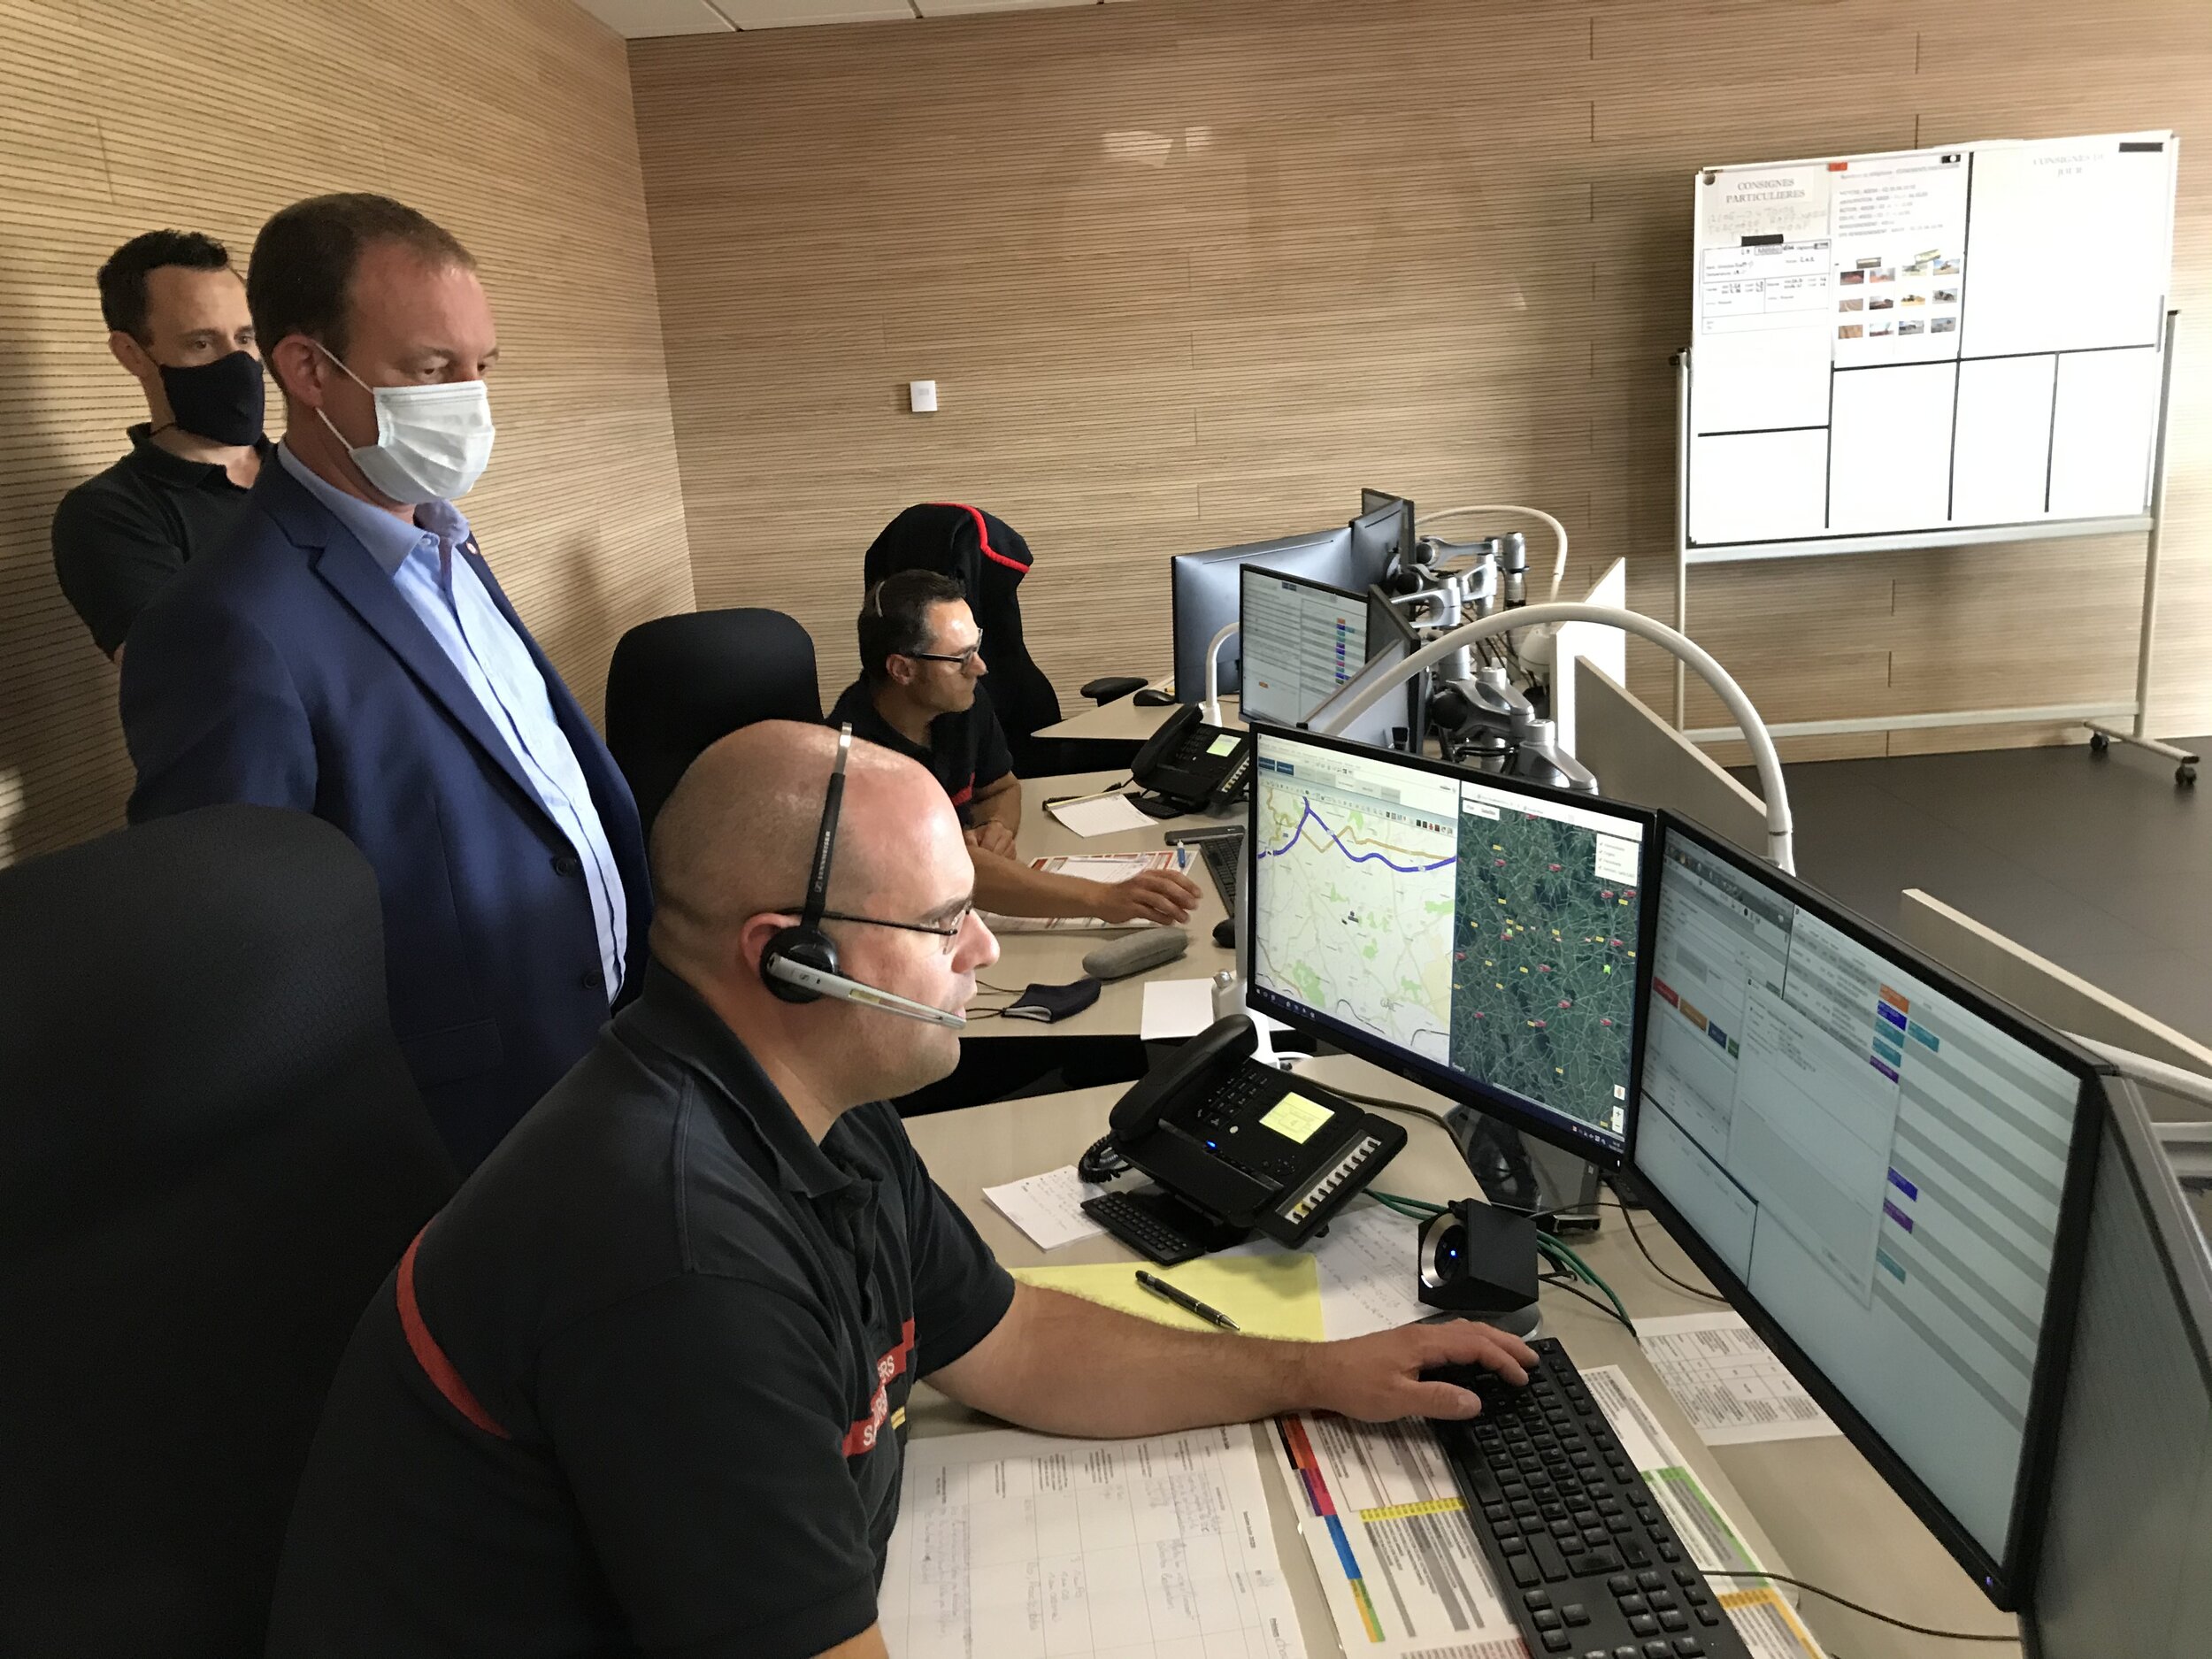 Dans la salle du Centre du traitement des appels du Codis 76, à Yvetot, ce sont quelque 350 000 appels qui sont traités par les sapeurs-pompiers (Photo : visite du CTA-Codis 76 à Yvetot, le 16 juin 2020).